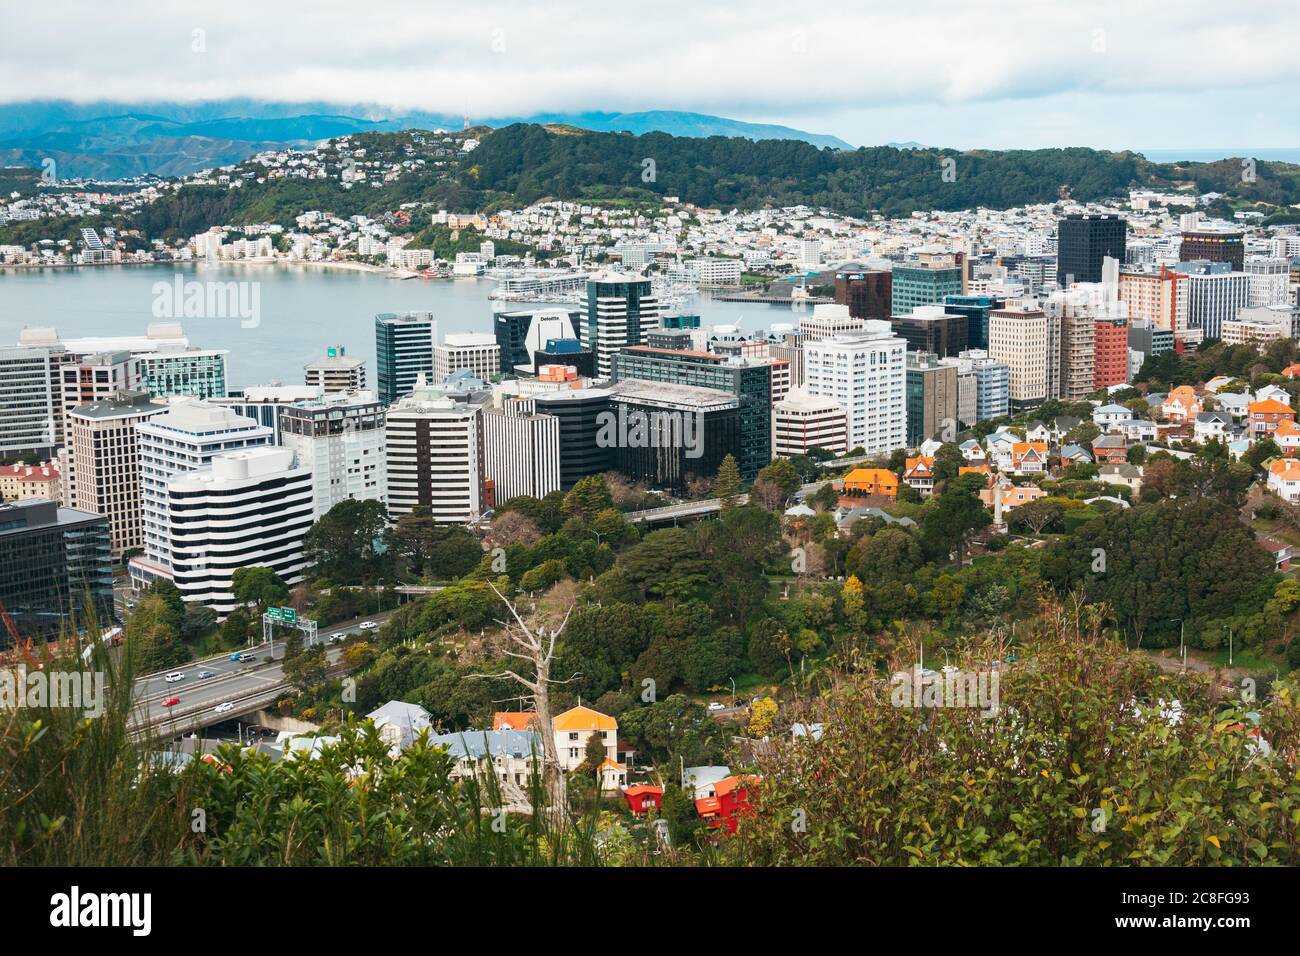 Die neuseeländische Hauptstadt Wellington und ihr Hafen, vom Northern Walk am Te Ahumairangi Hill Reserve aus gesehen, einem Teil des Stadtgürtels der Stadt Stockfoto